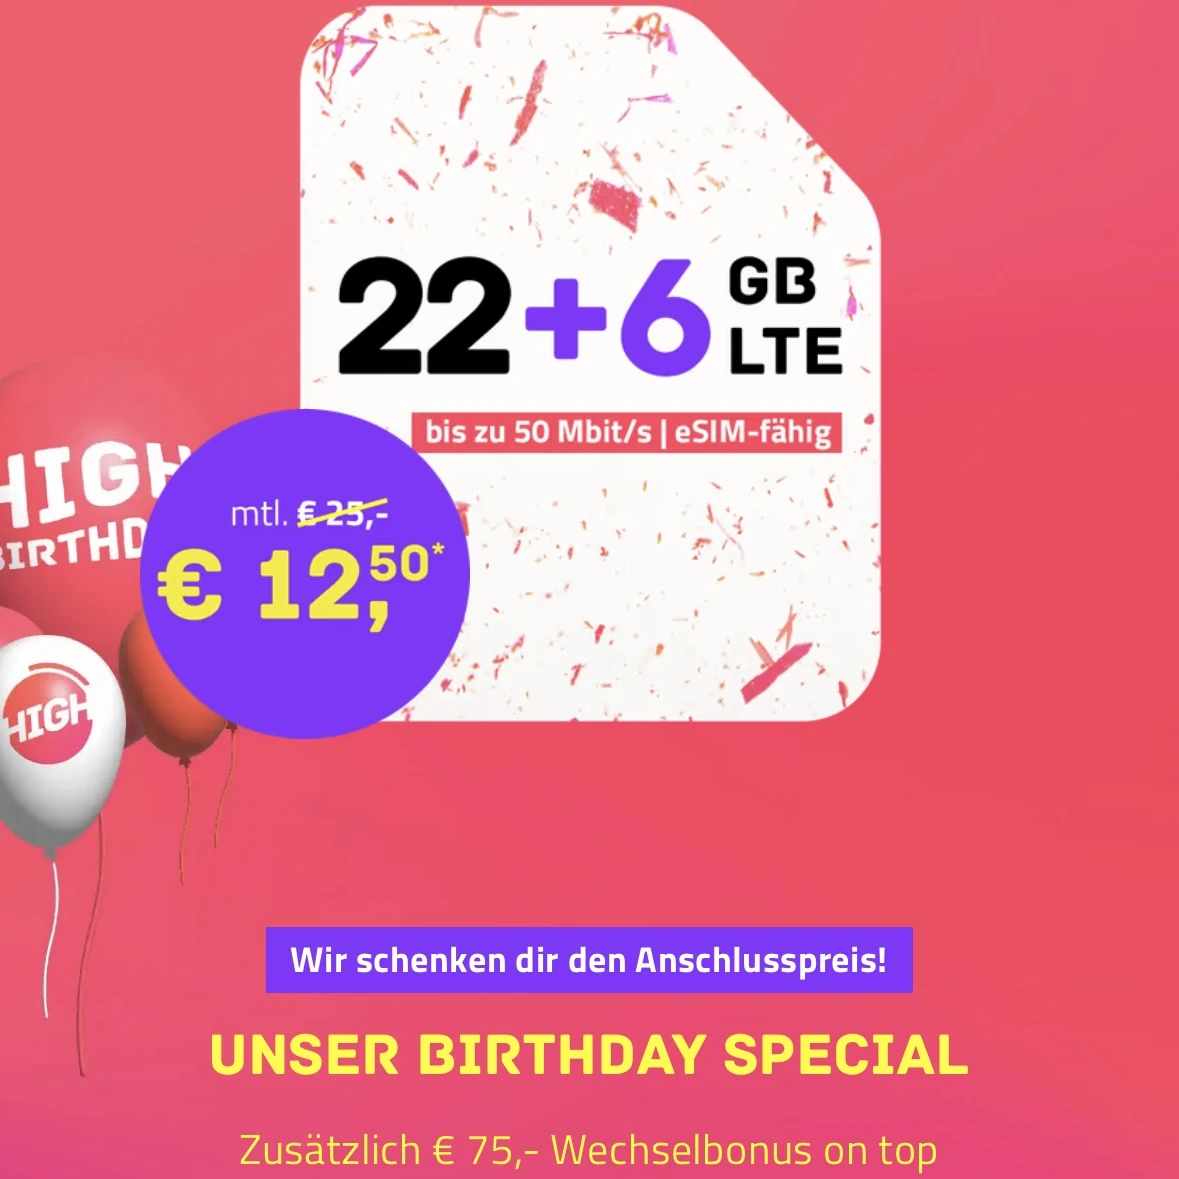 HIGH feiert mit mega Angeboten Geburtstag! Z.b. 28 GB für nur 12,50€